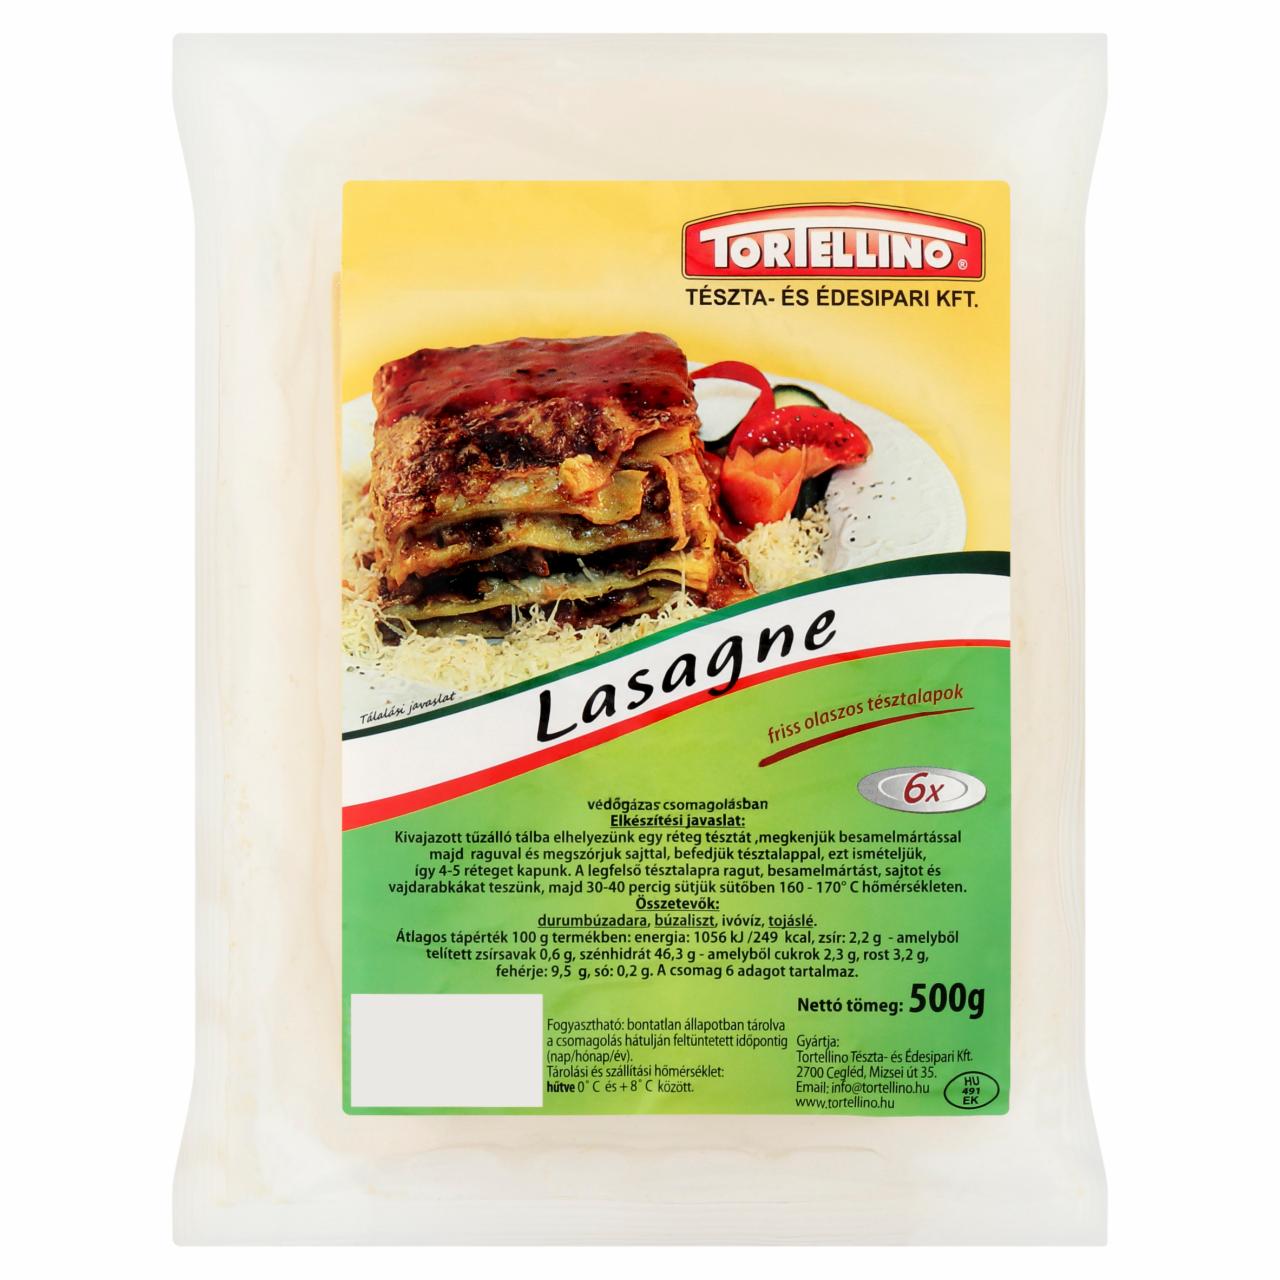 Képek - Tortellino lasagne friss olaszos tésztalapok 500 g